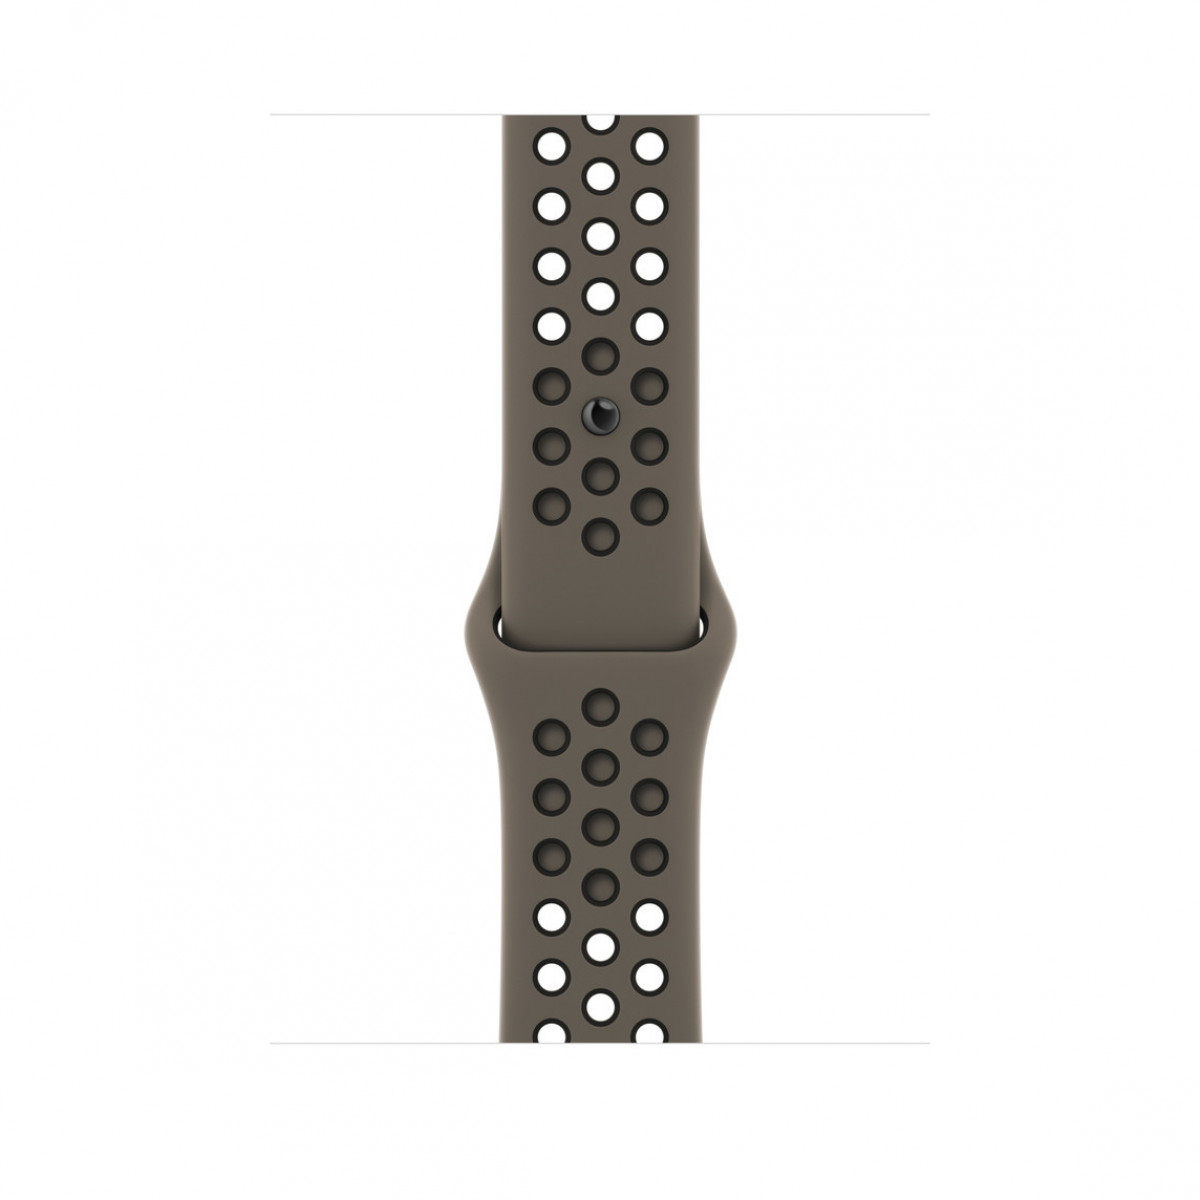 Спортивный ремешок Nike для Apple Watch 41 мм, цвета «cерая олива/черный» 